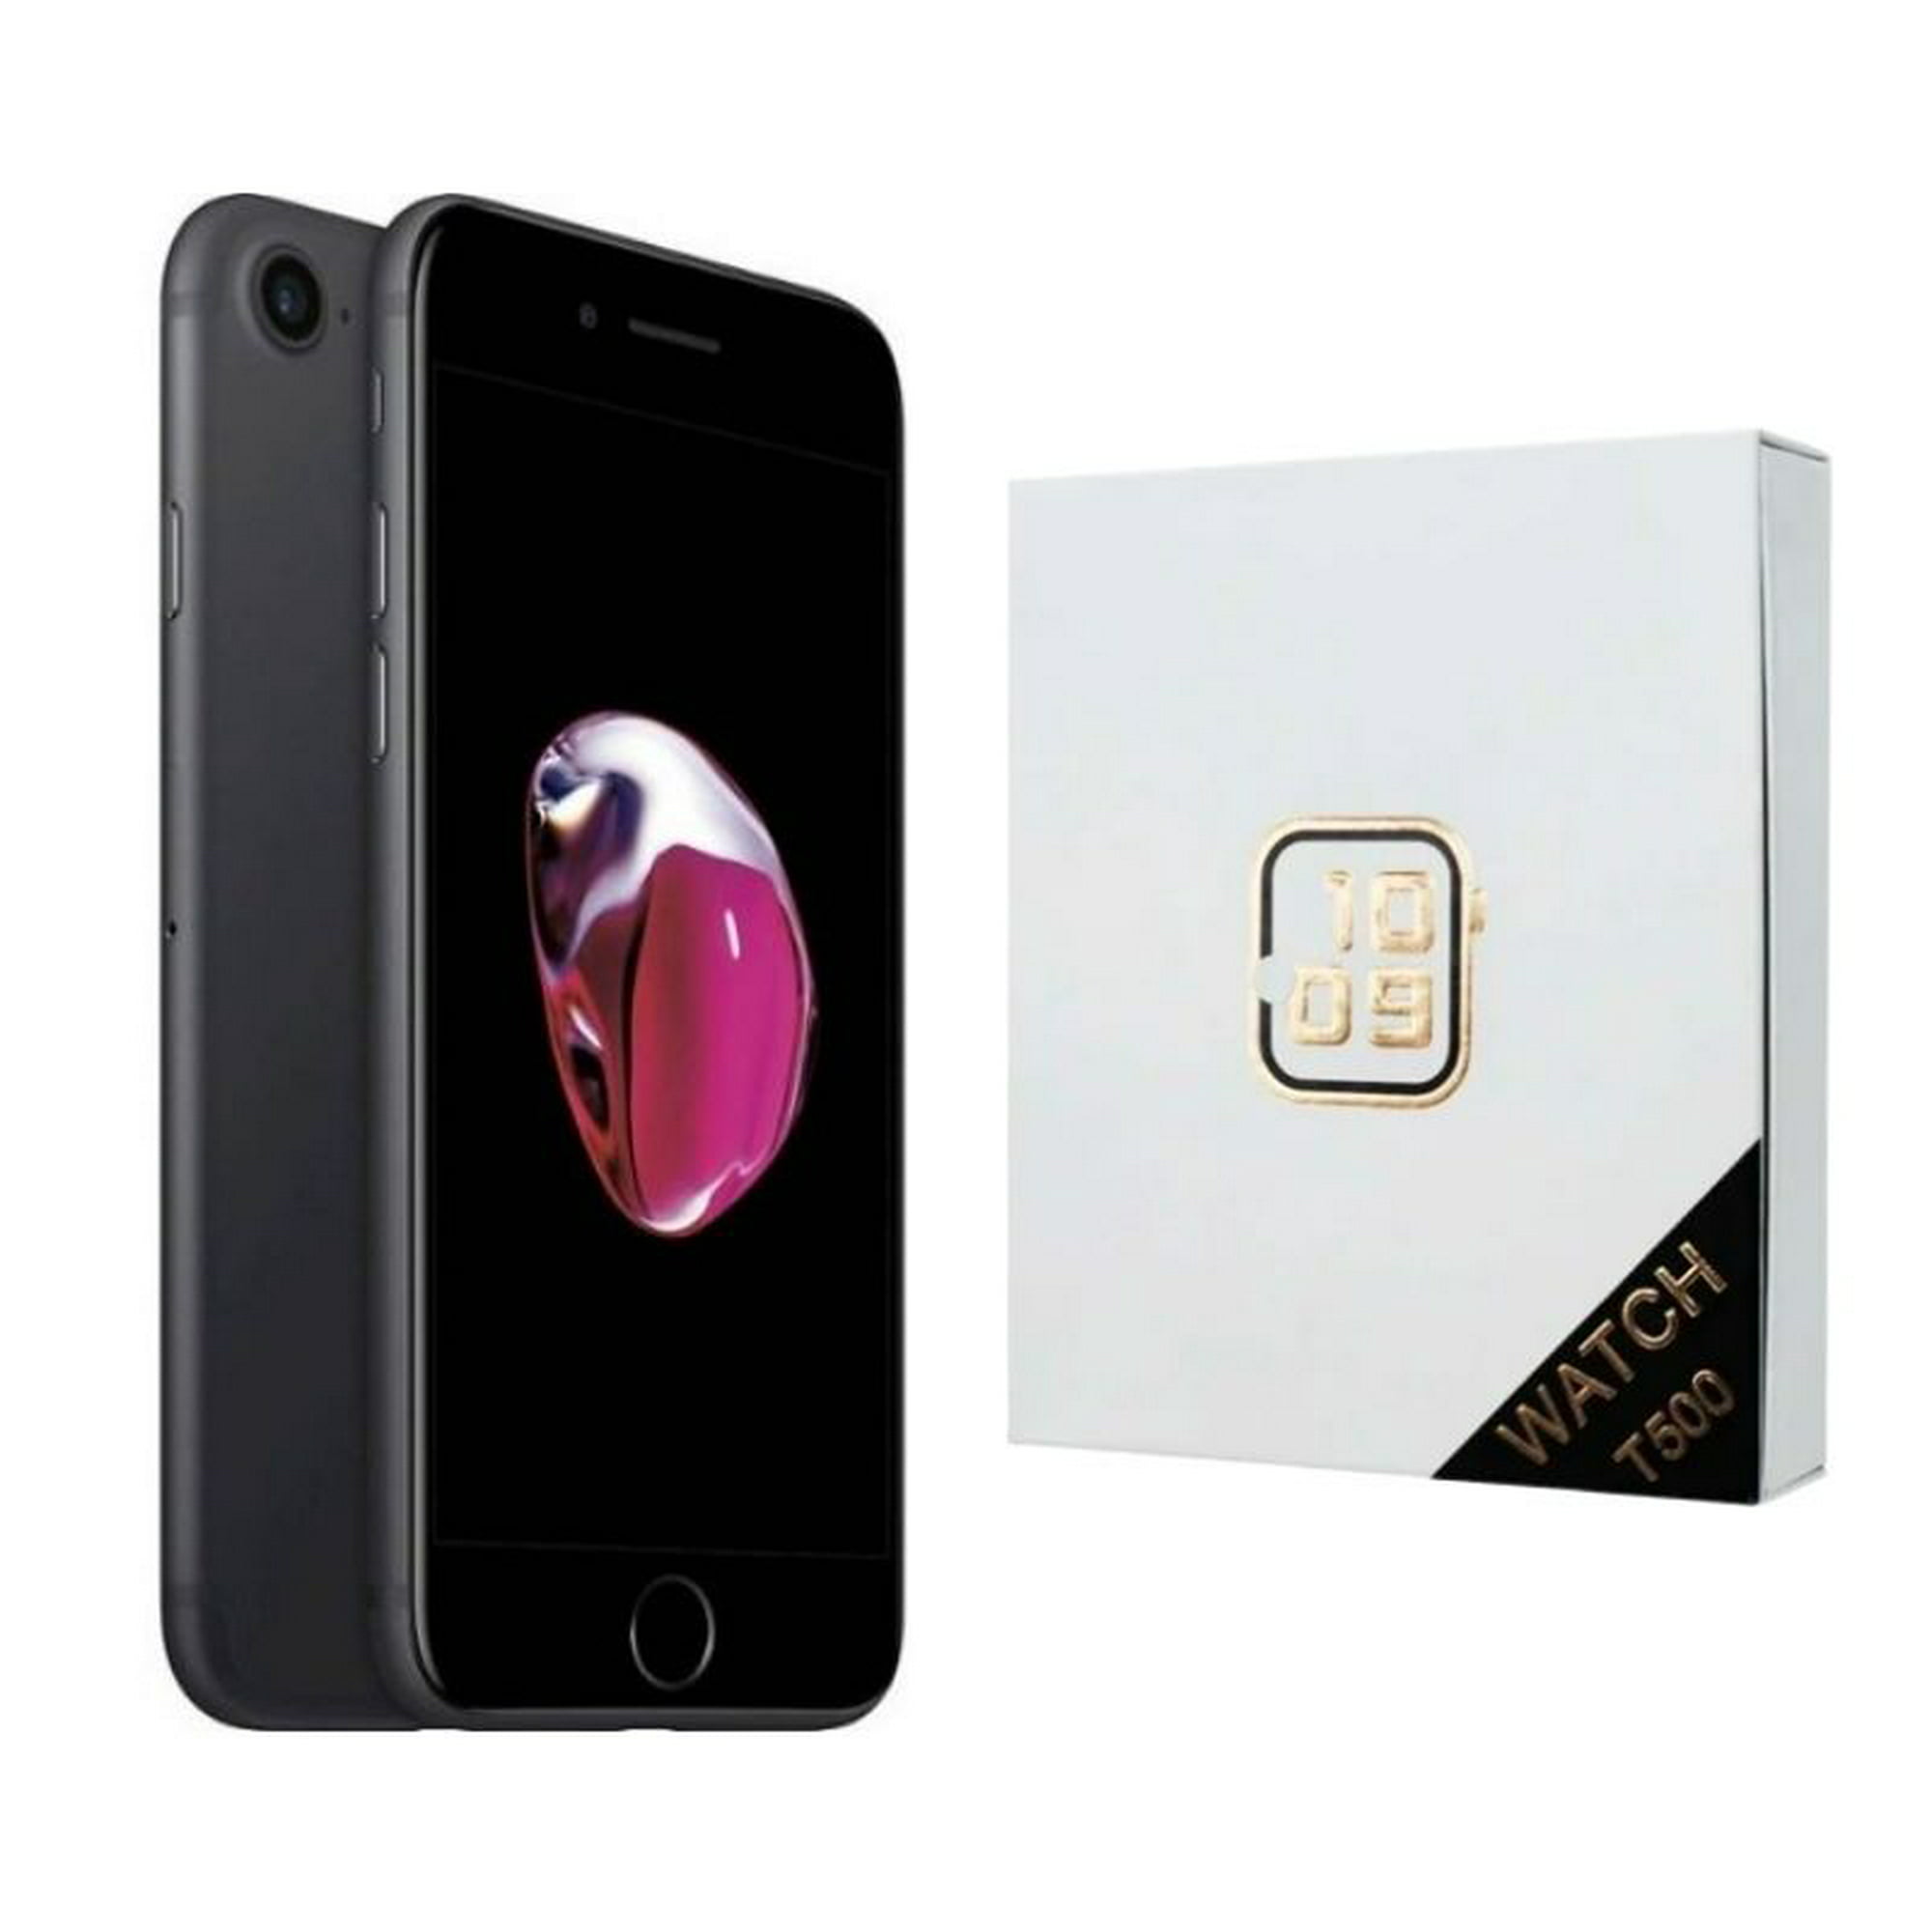 Celular Apple Iphone Xr Reacondicionado 64gb Color Amarillo Más Audífonos  Genéricos